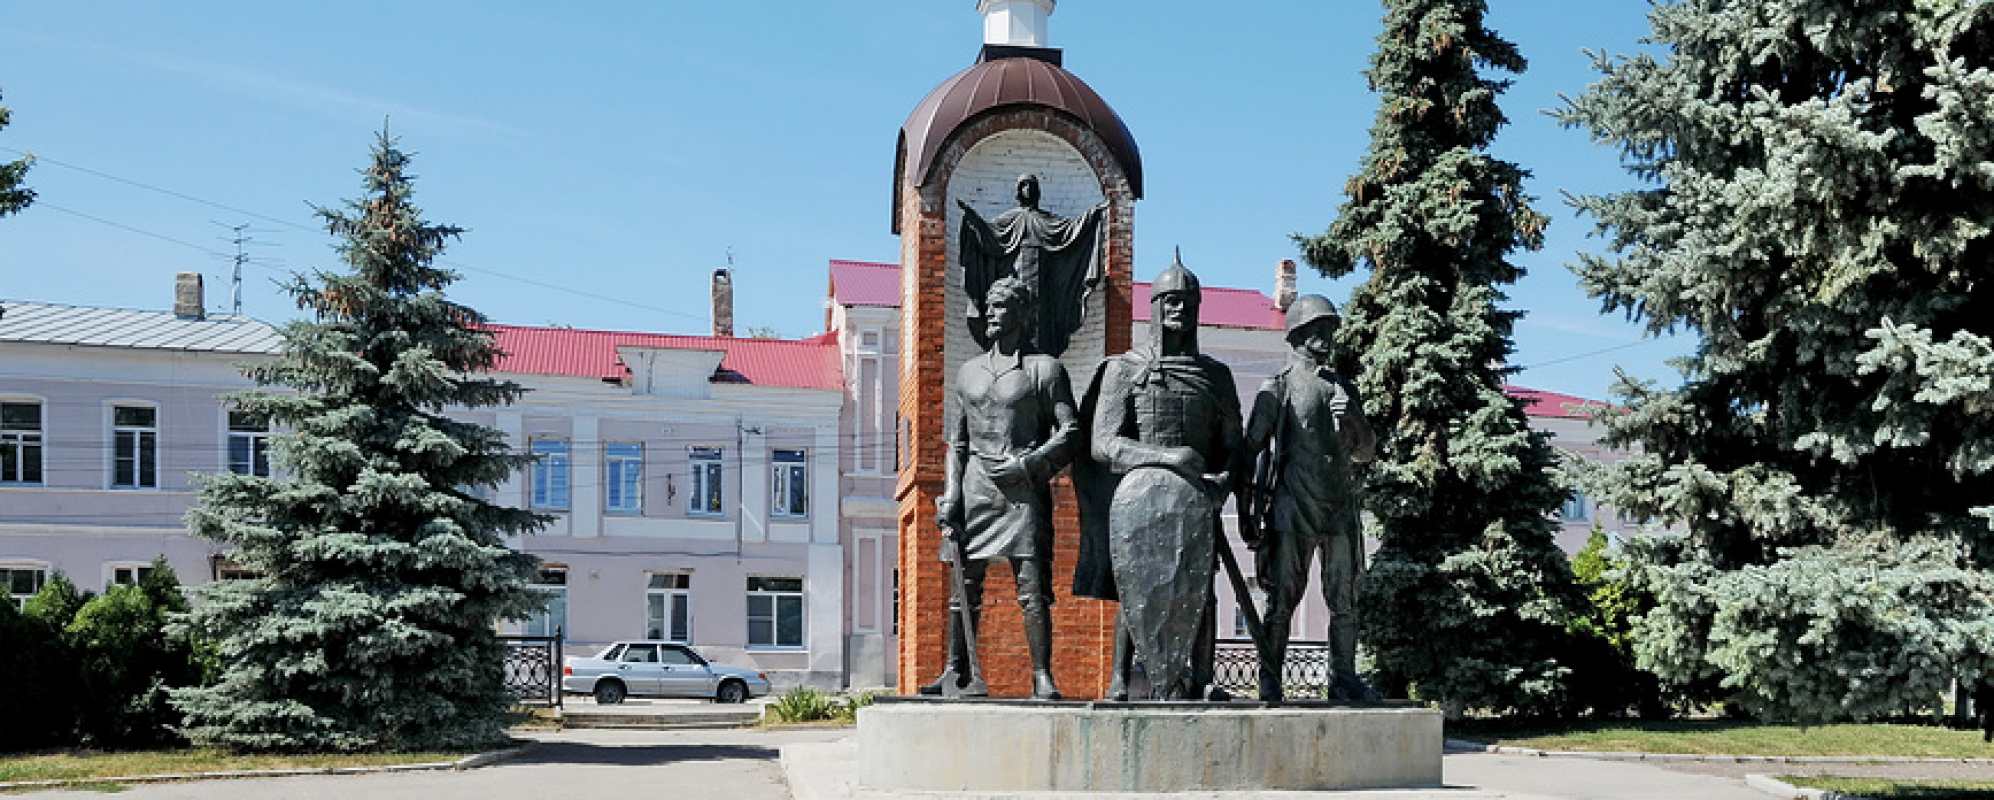 Фотографии памятника Памятный знак в честь 850-летия основания города